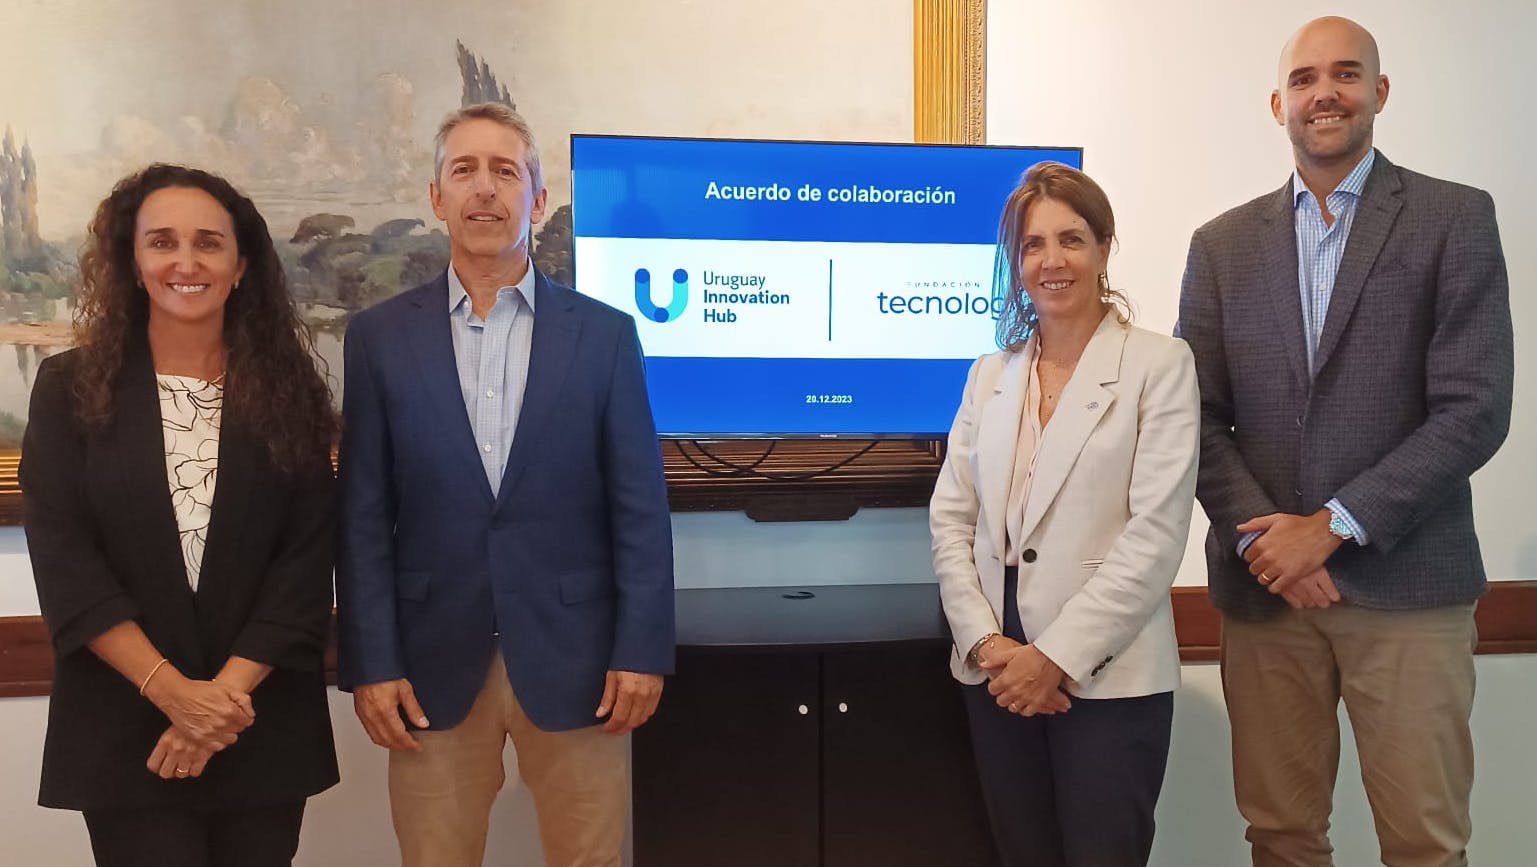 Representantes de Uruguay Innovation Hub y Tecnolog posan para la foto. Detrás una pantalla con los logos de ambas instituciones